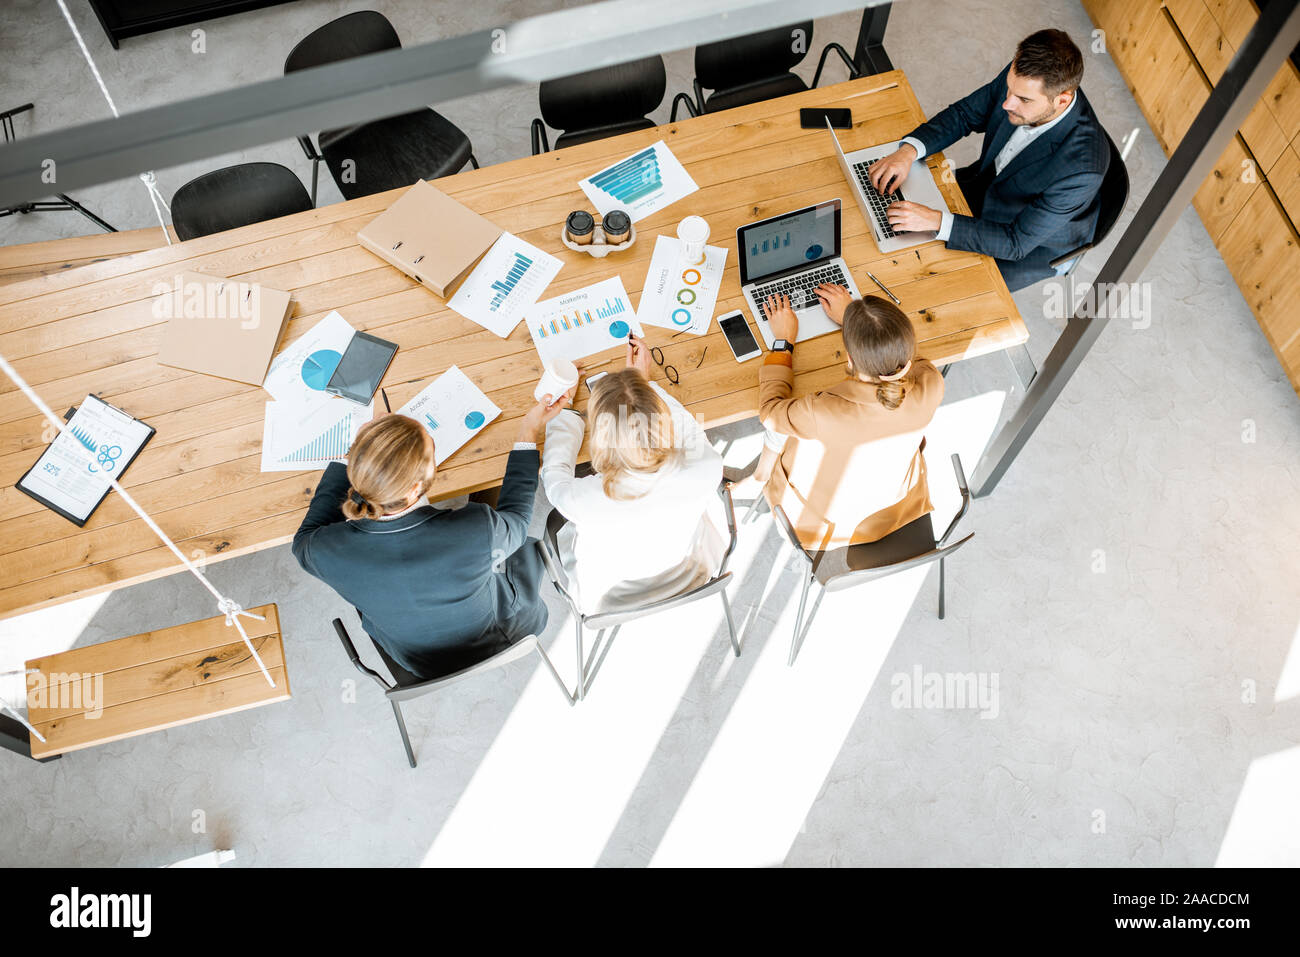 Les gens d'affaires travailler avec les ordinateurs et les statistiques au tableau en bois dans la salle de réunion, voir ci-dessus de la Banque D'Images